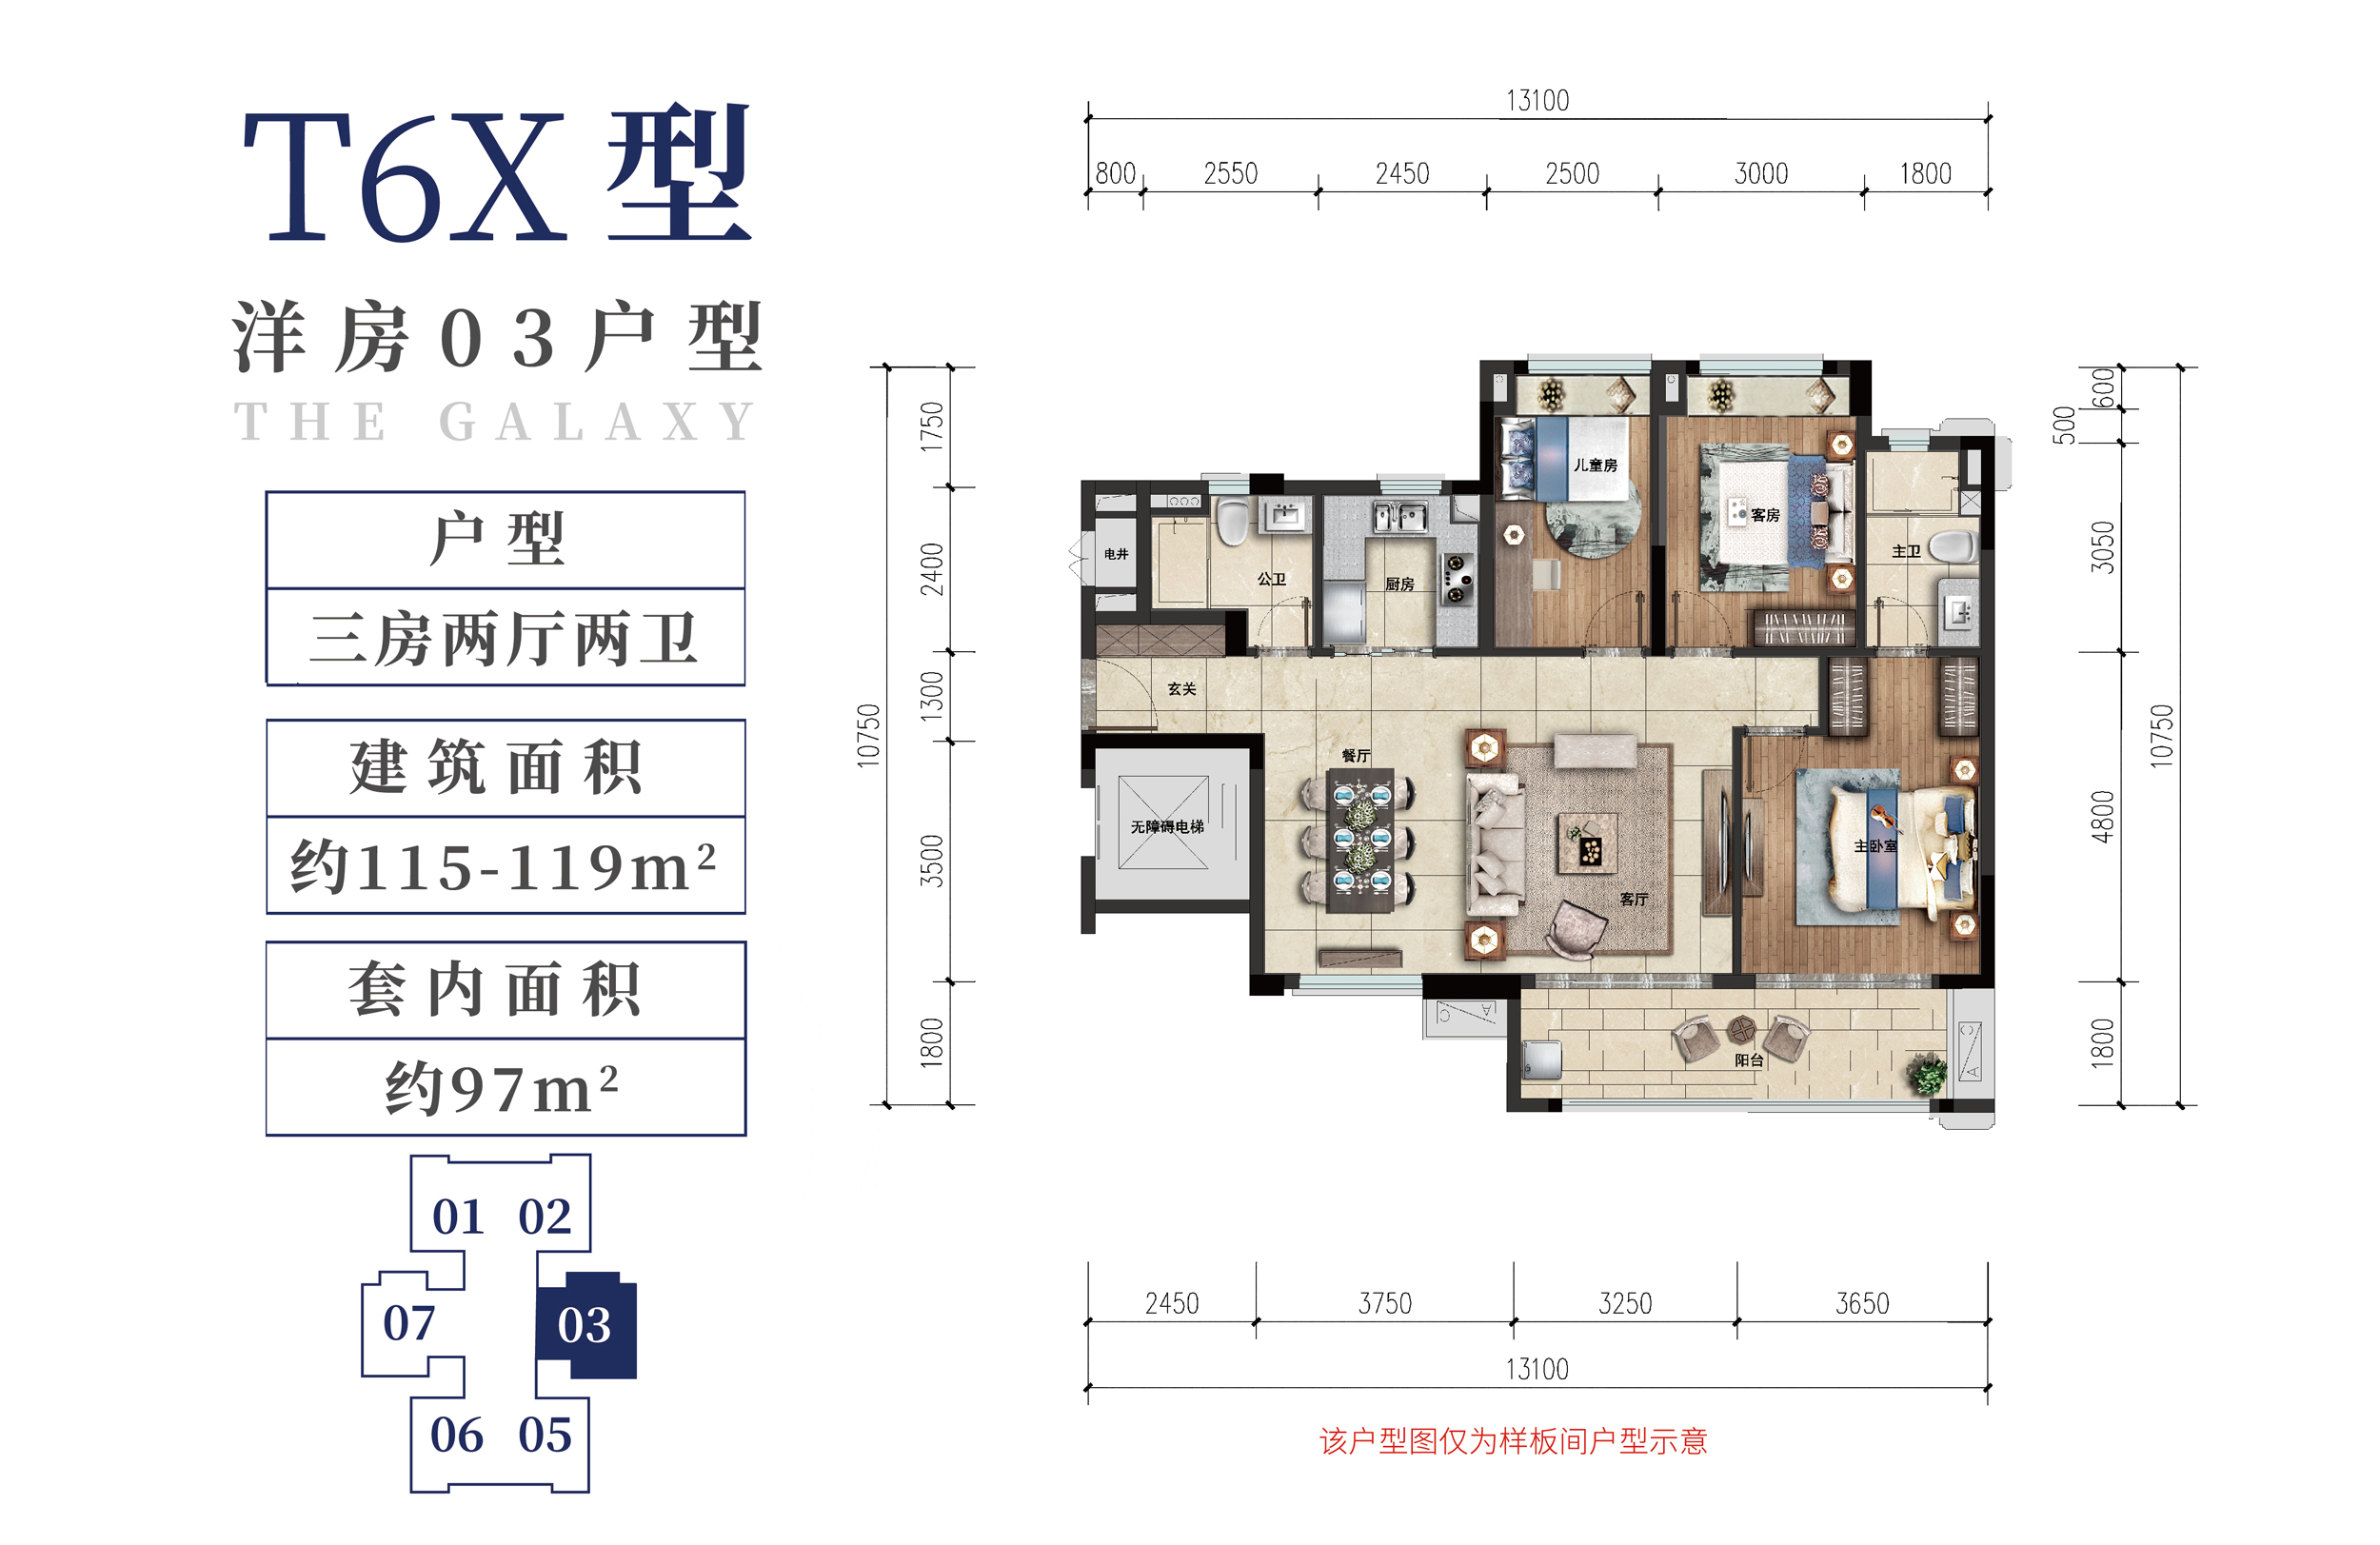 雅居乐清水湾星海传说 洋房 T6X型03户型 3房2厅2卫 建筑面积115-119㎡